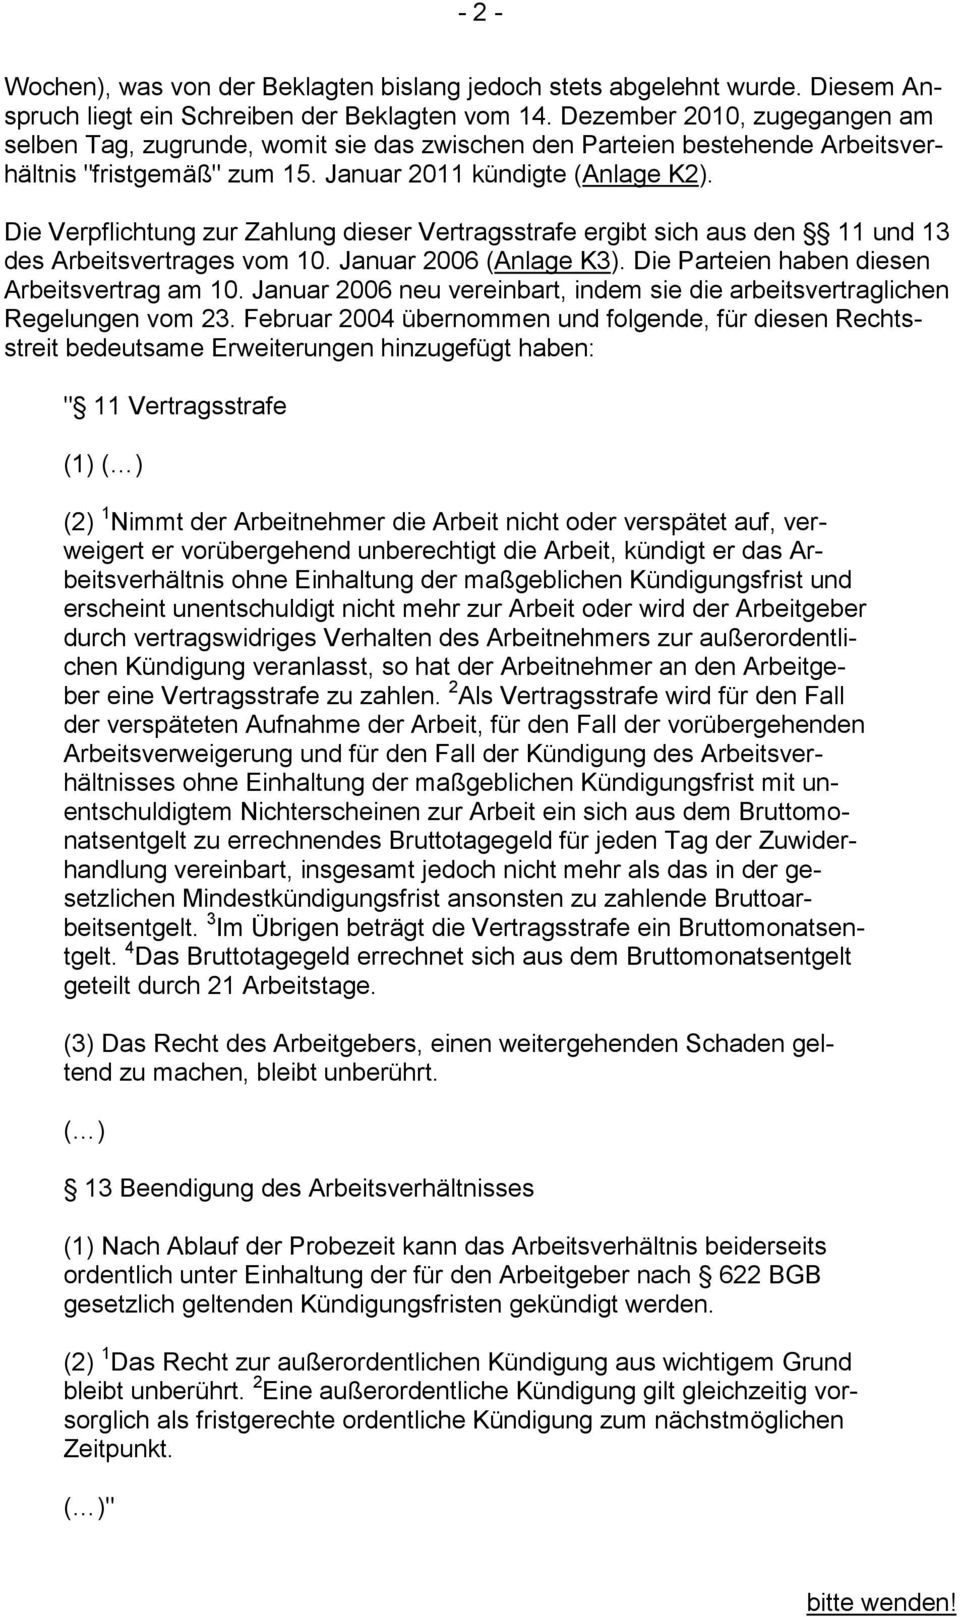 Die Verpflichtung zur Zahlung dieser Vertragsstrafe ergibt sich aus den 11 und 13 des Arbeitsvertrages vom 10. Januar 2006 (Anlage K3). Die Parteien haben diesen Arbeitsvertrag am 10.